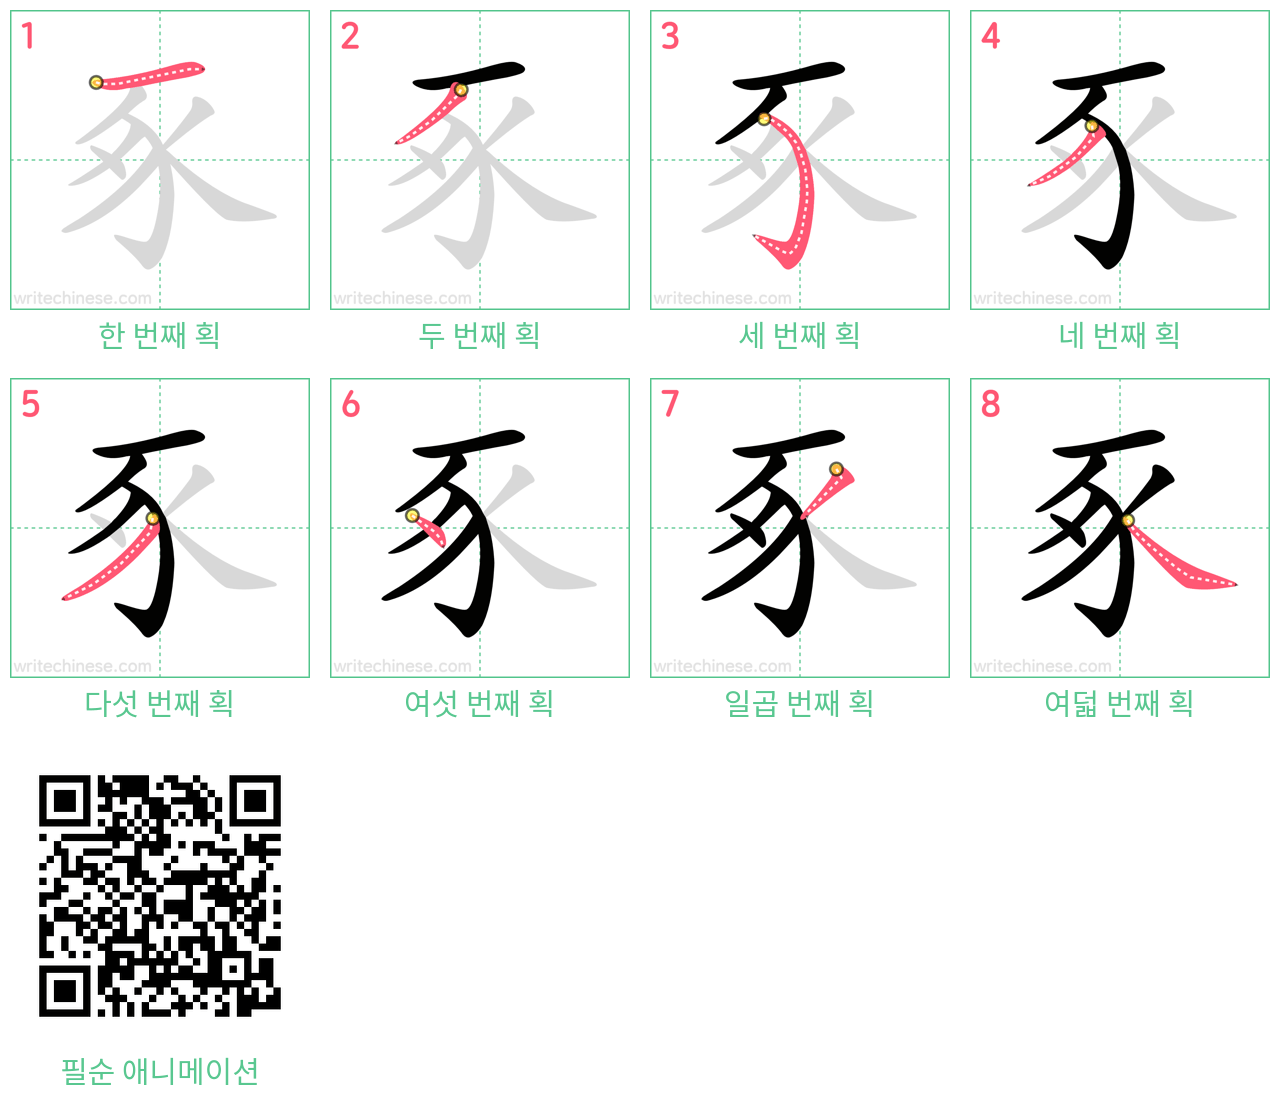 豖 step-by-step stroke order diagrams